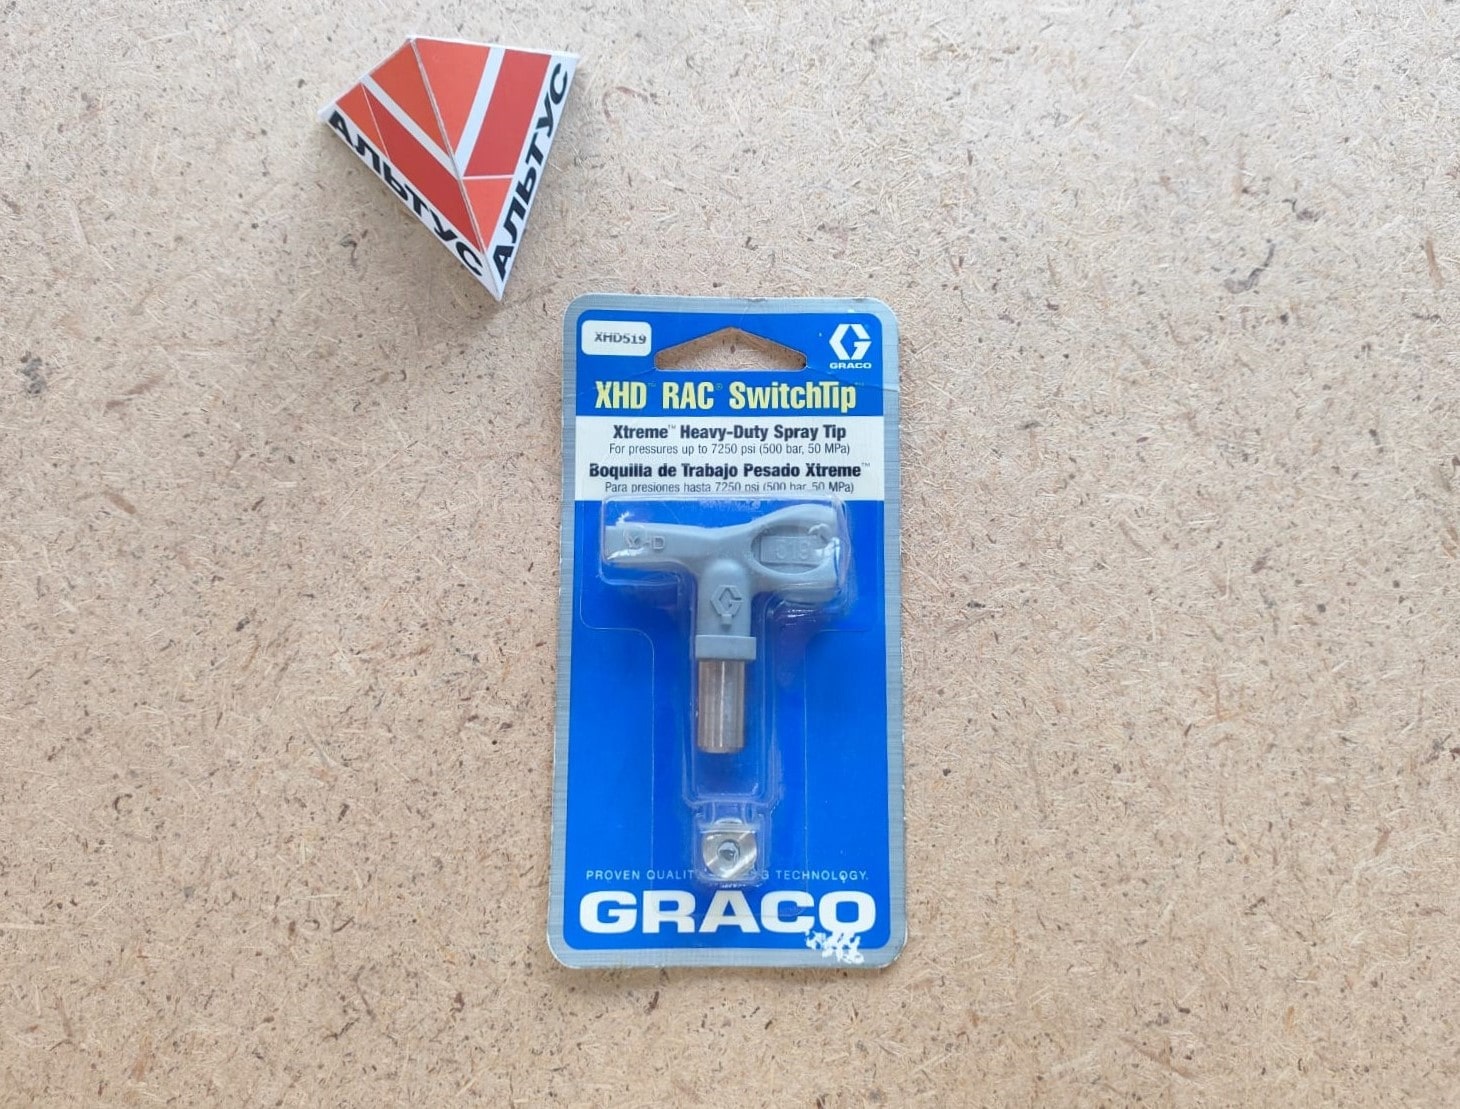 Сопло XHD 519 для безвоздушного краскопульта GRACO / Грако